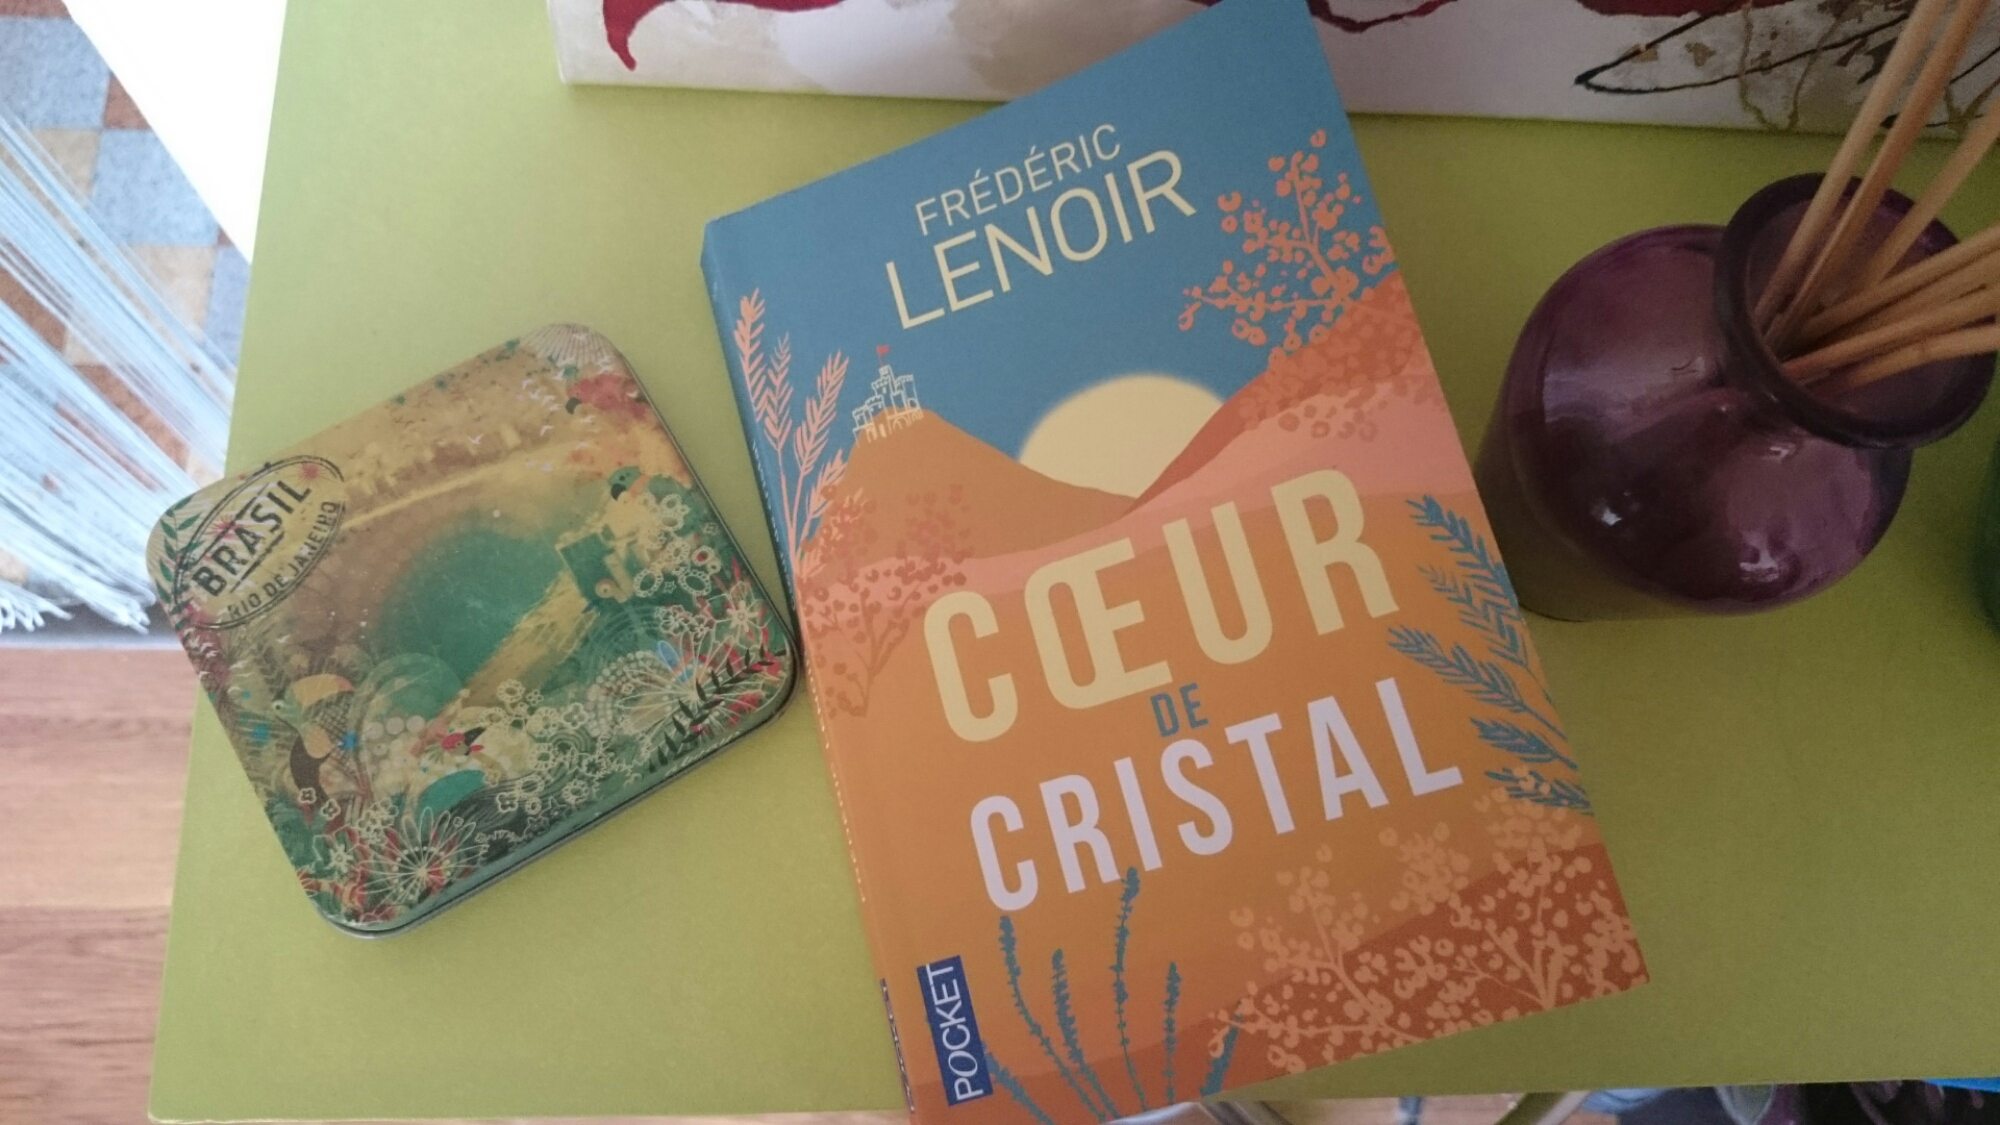 Coeur de cristal – Frédéric LENOIR 